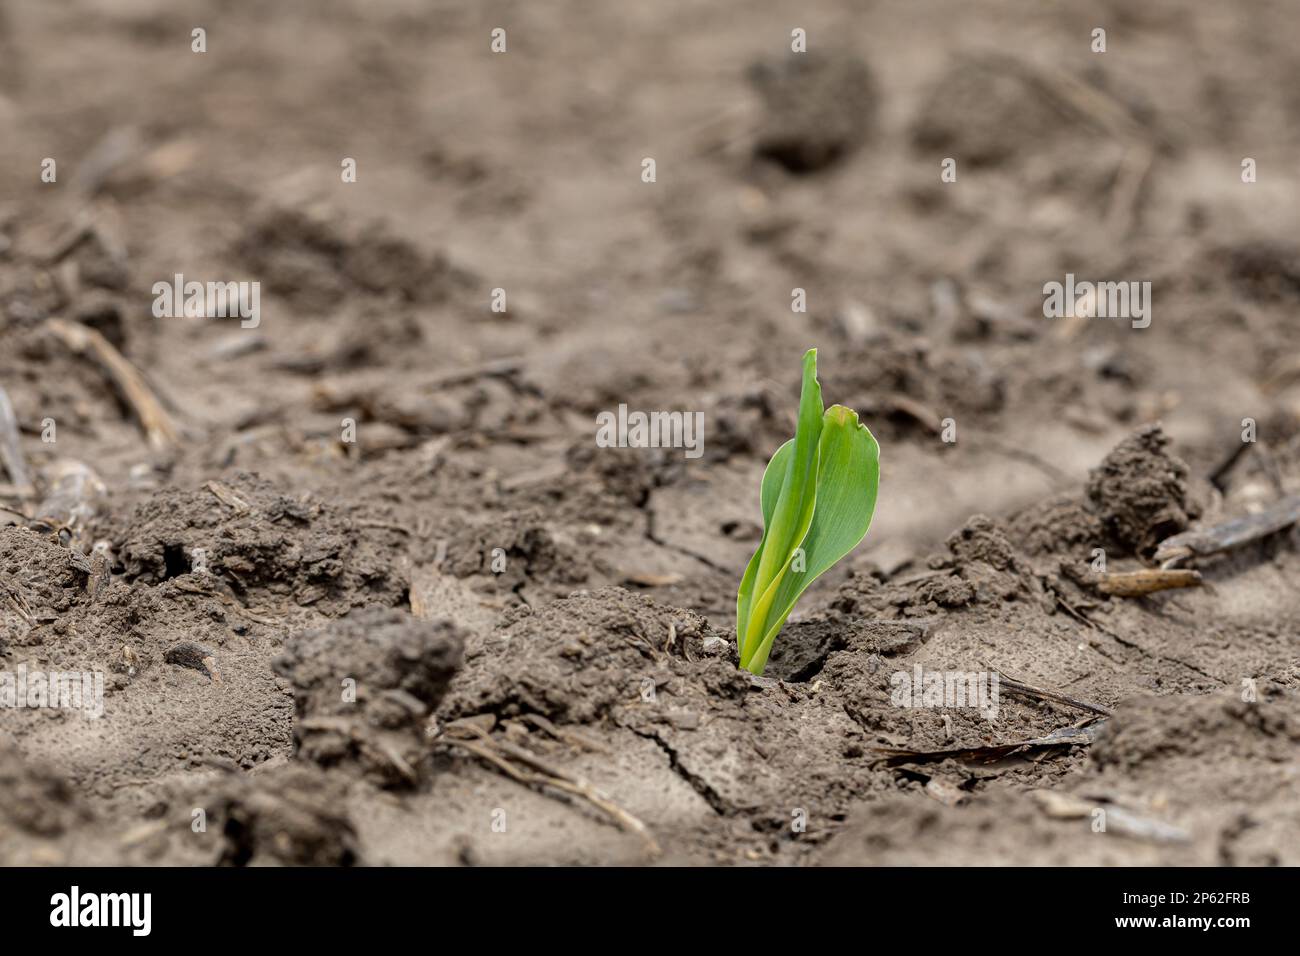 Maispflanze, die aus dem Boden auftaucht. VE-Wachstumsphase. Landwirtschaft, Landwirtschaft und Pflanzsaison Konzept Stockfoto